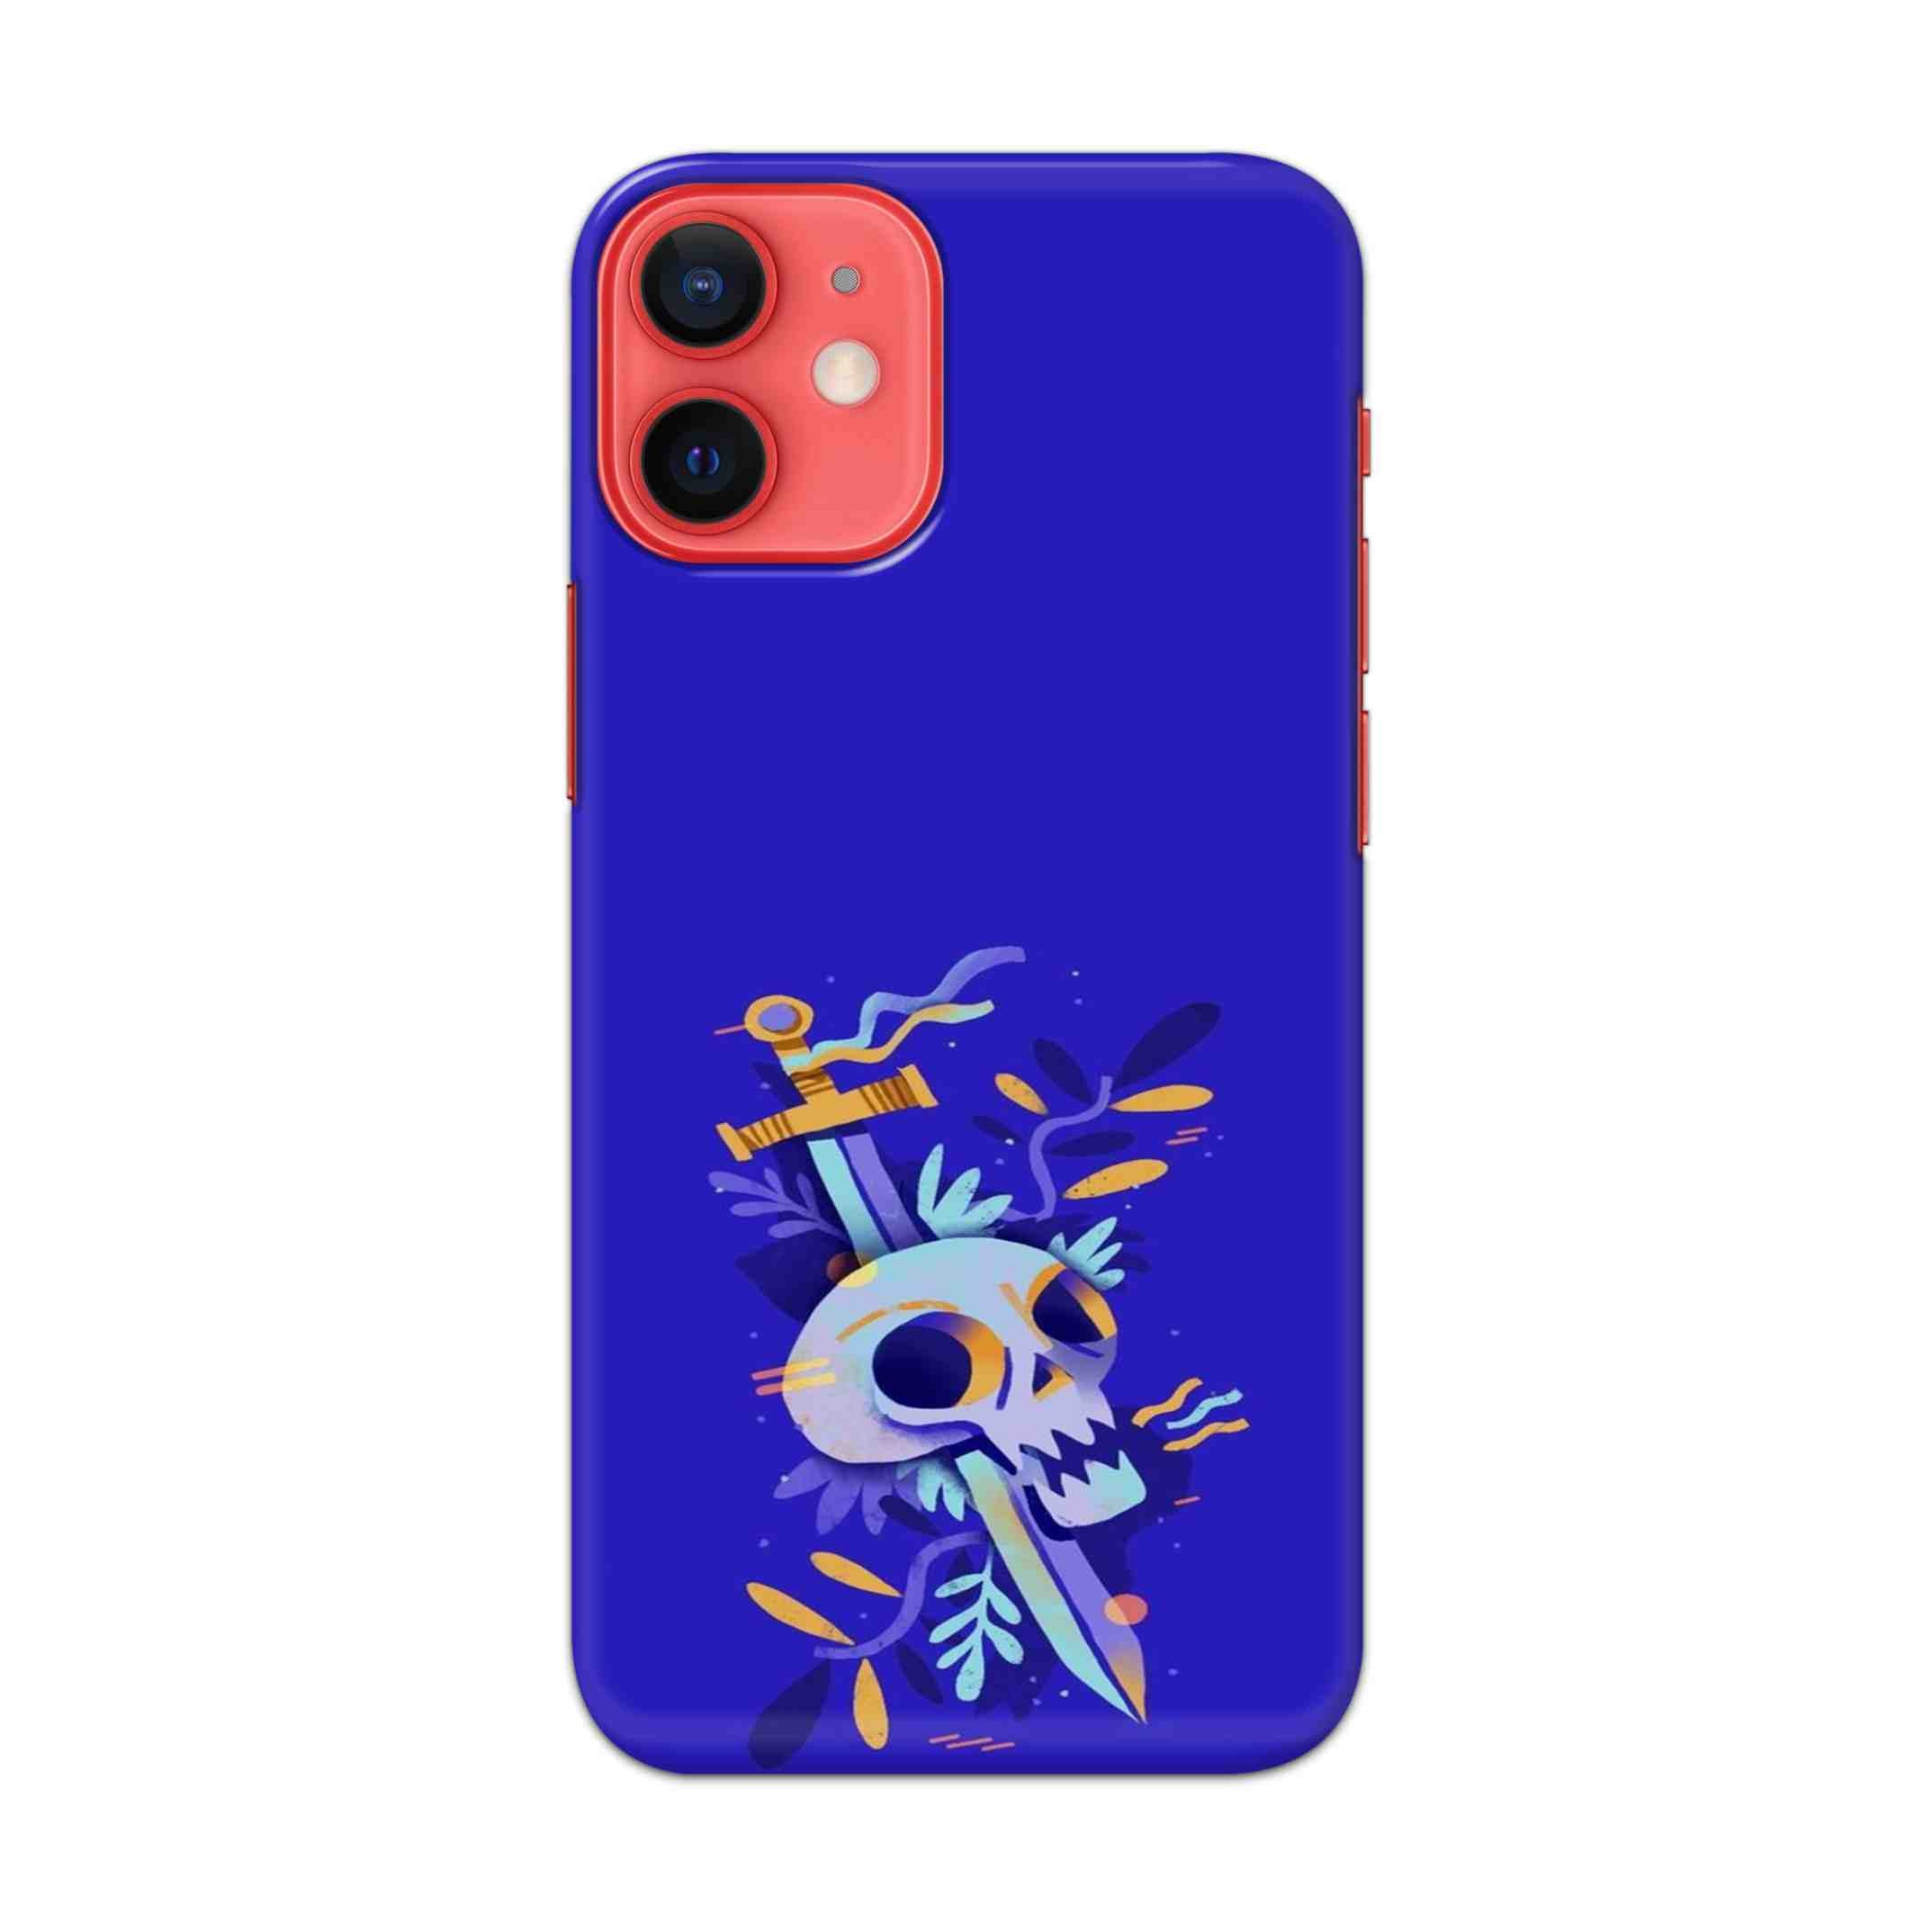 Buy Blue Skull Hard Back Mobile Phone Case/Cover For Apple iPhone 12 mini Online